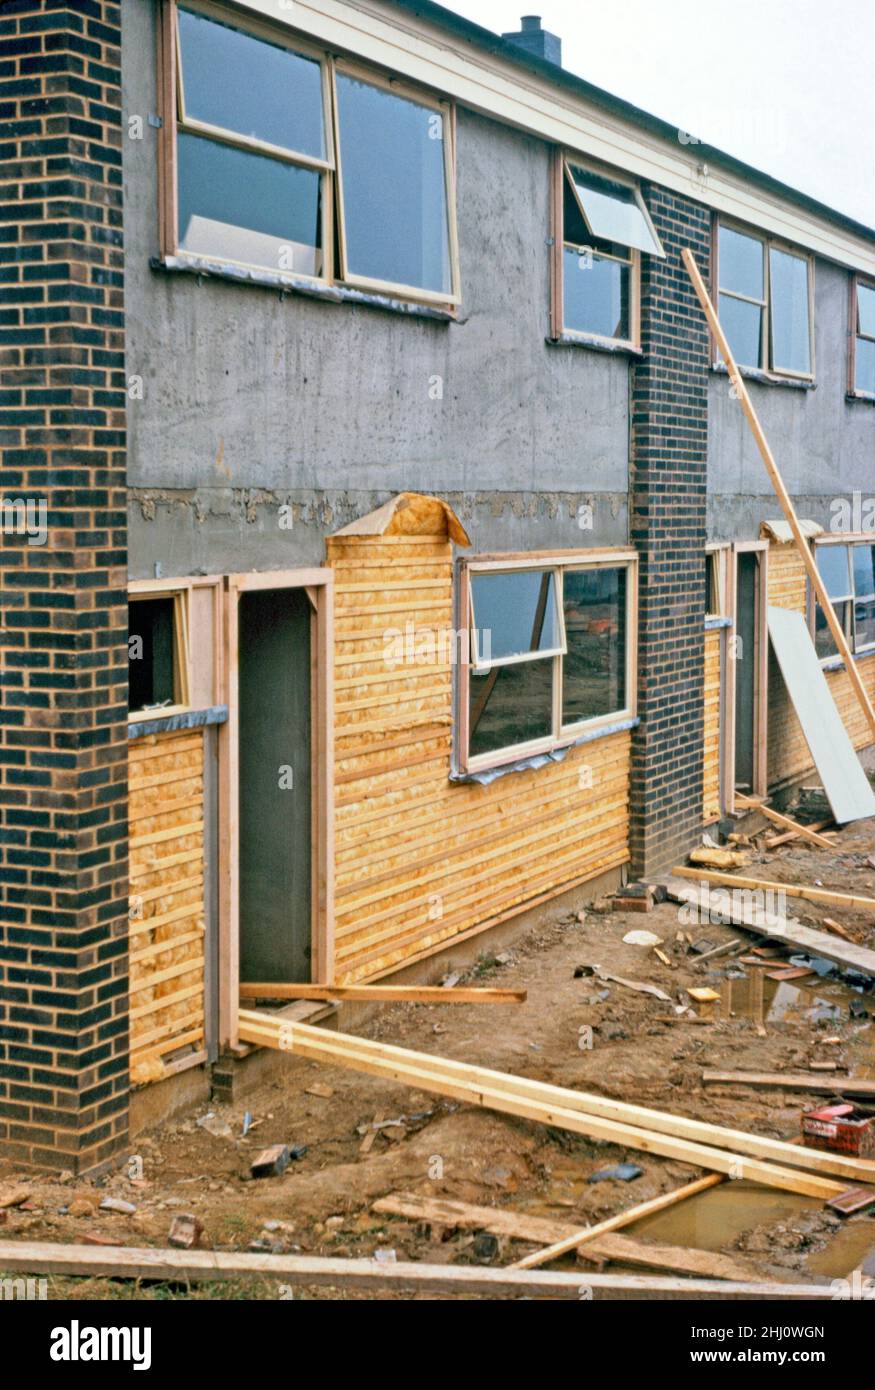 Moderner Hausbau in Stevenage New Town, Hertfordshire, England, Großbritannien im Jahr 1963. Hier wird an den Fronten einer Terrasse aus Häusern die Dämmung (nach modernen Standards dünn) durch Holzlatten gehalten, bevor eine aufgehängte Fliesenschicht aufgebracht wird – siehe Alamy 2HJ0WDC für die Arbeiter, die die Fliesen auftragen. Stevenage liegt etwa 30 Meilen (50 km) nördlich von London. Im Jahr 1946 wurde Stevenage nach dem New Towns Act zur ersten Neustadt Großbritanniens ernannt. Dieses Bild stammt aus einer alten Amateur-Farbtransparenz – einem Vintage-Foto aus dem Jahr 1960s. Stockfoto